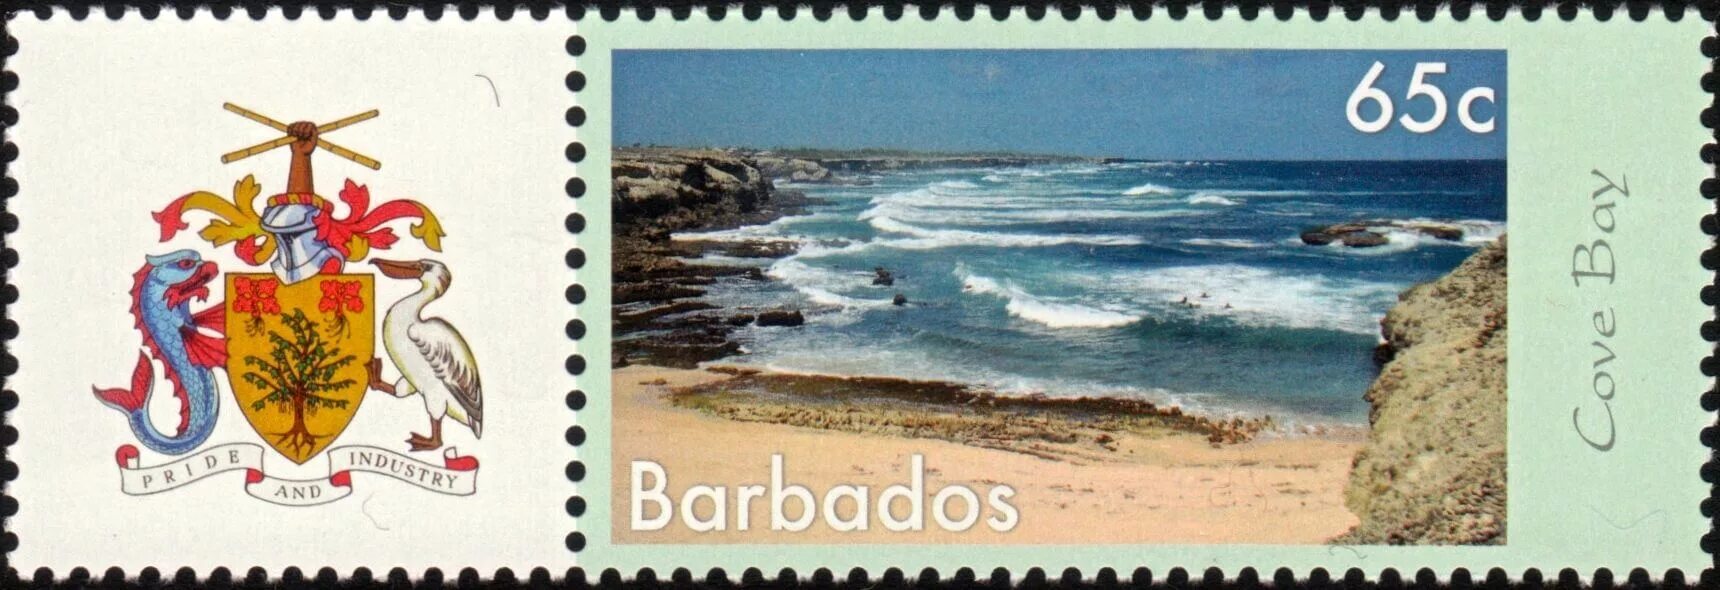 Барбадос марка Почтовая. Марка Гватемала и Барбадоса. Марки Гватемалы и Барбадоса почтовые. Дам гватемалу и два барбадоса